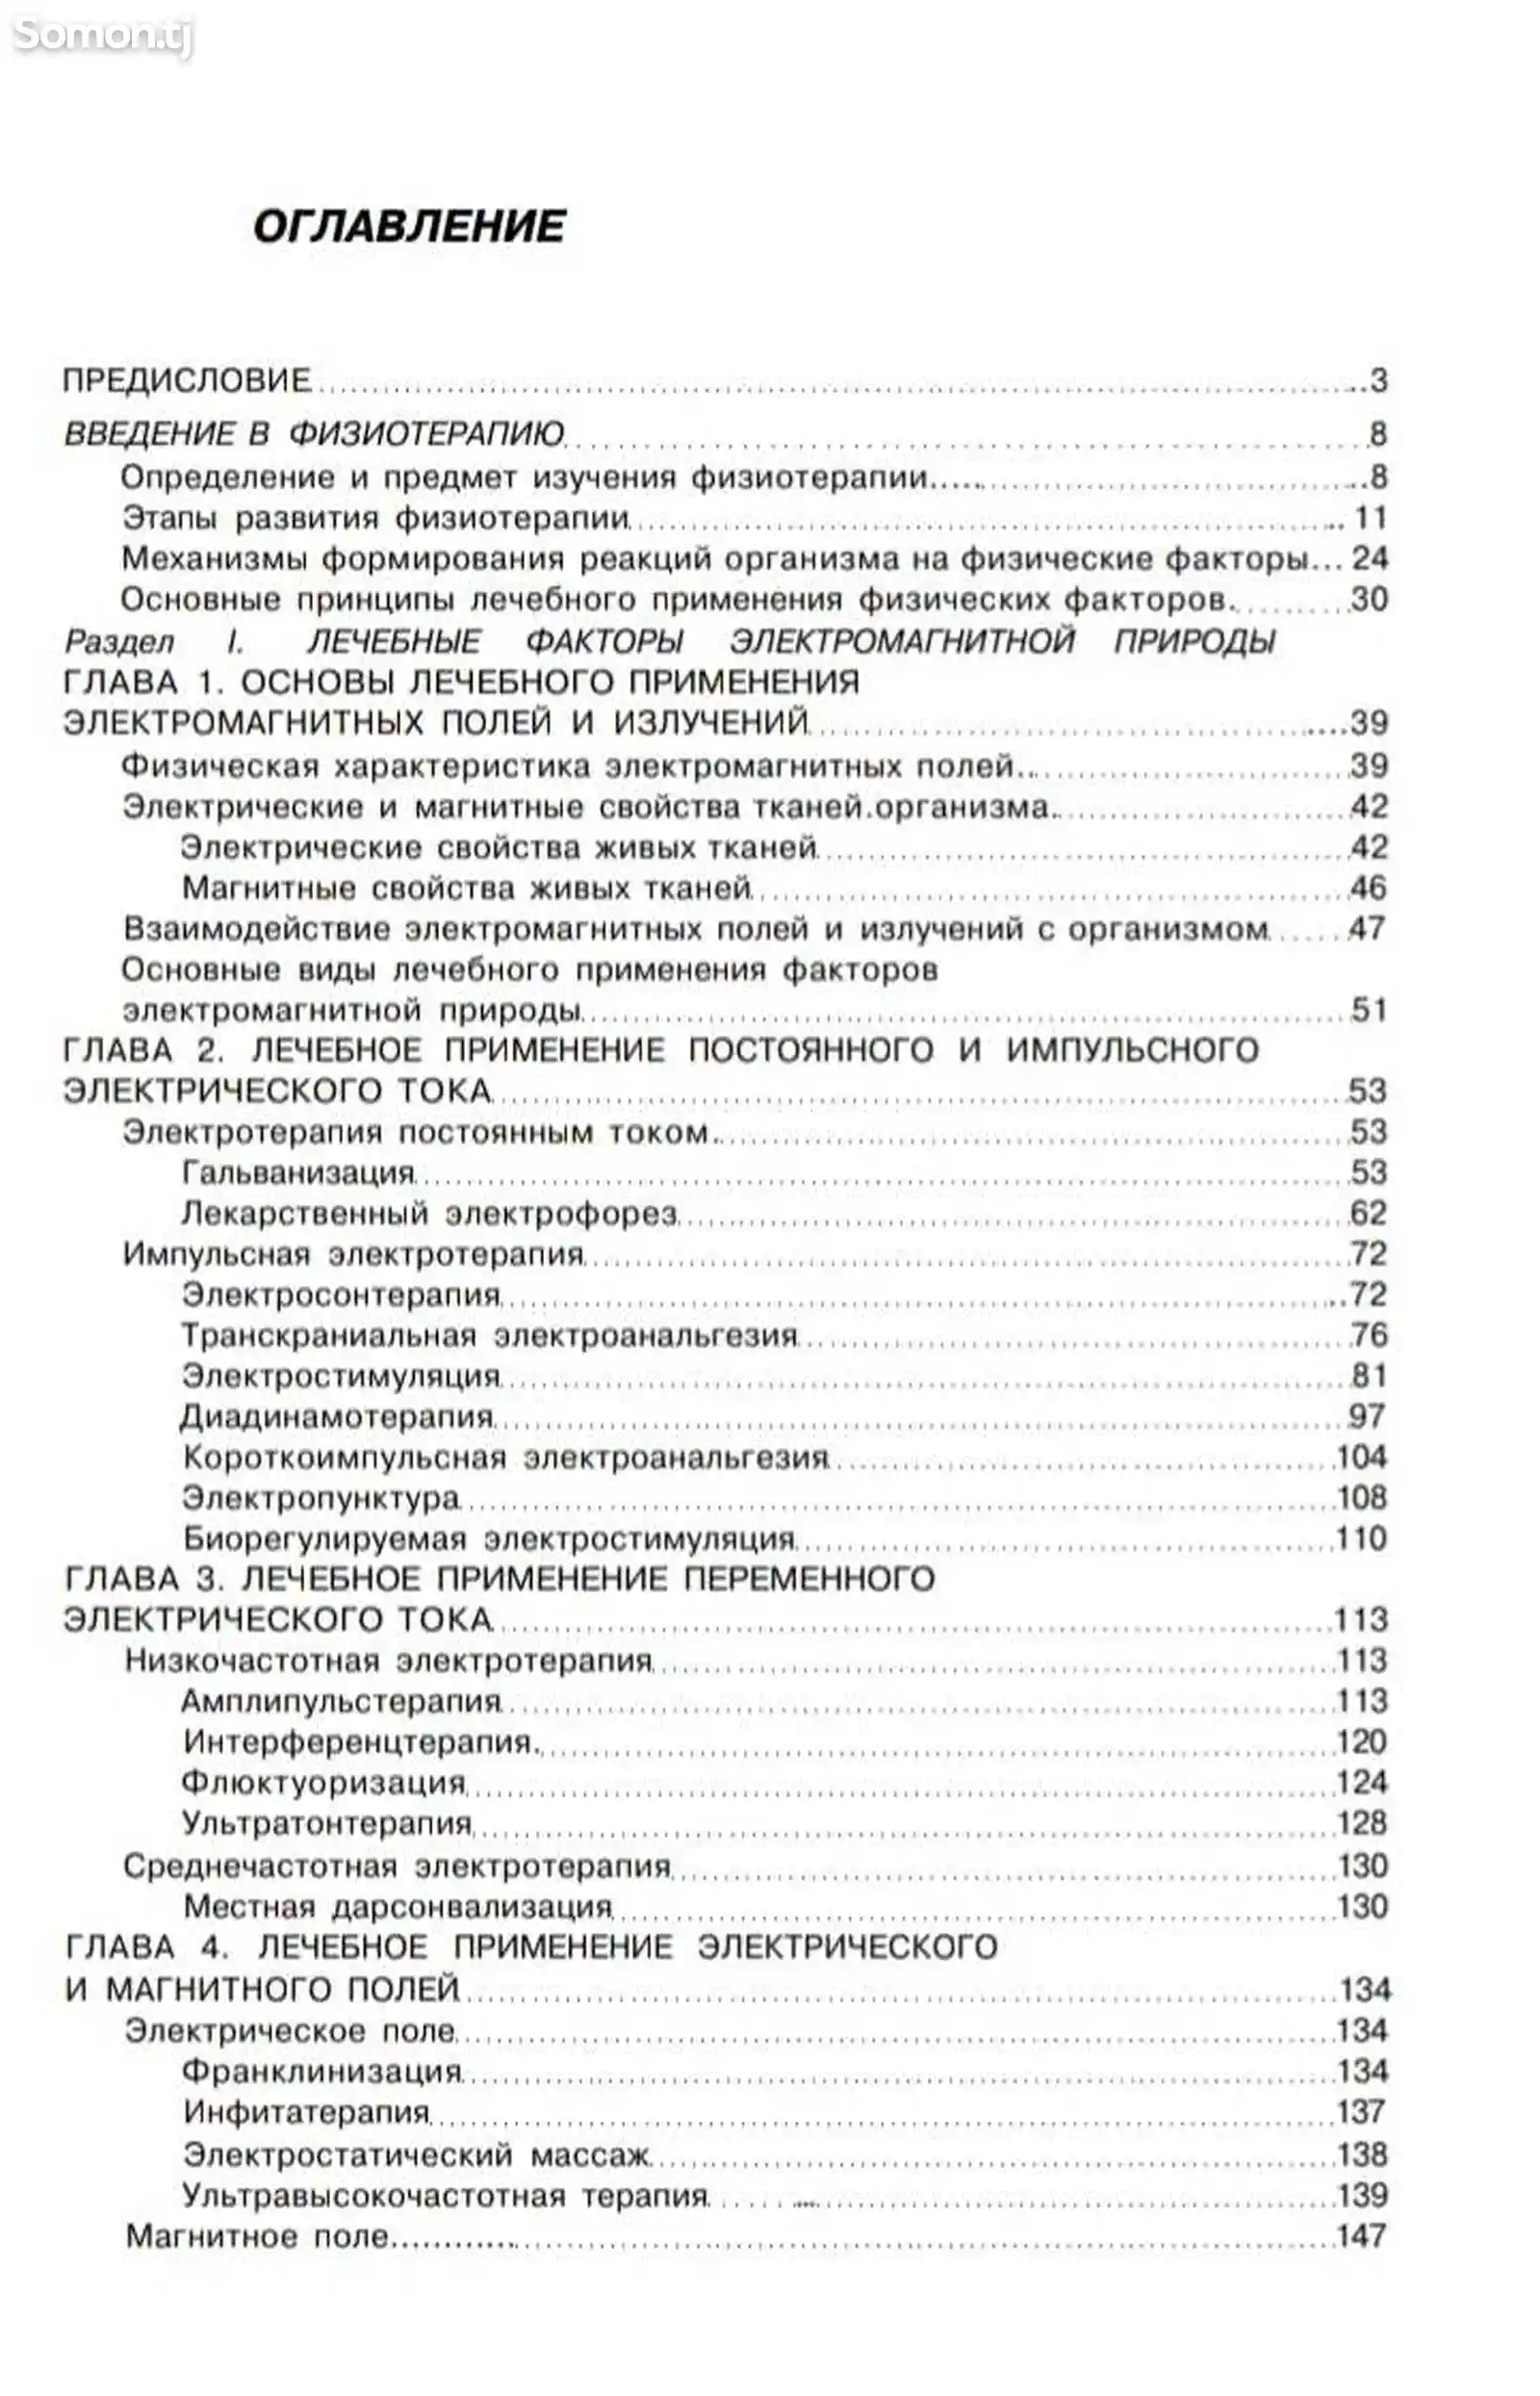 Книга Общая физиотерапия автор Боголюбов В. М.-2